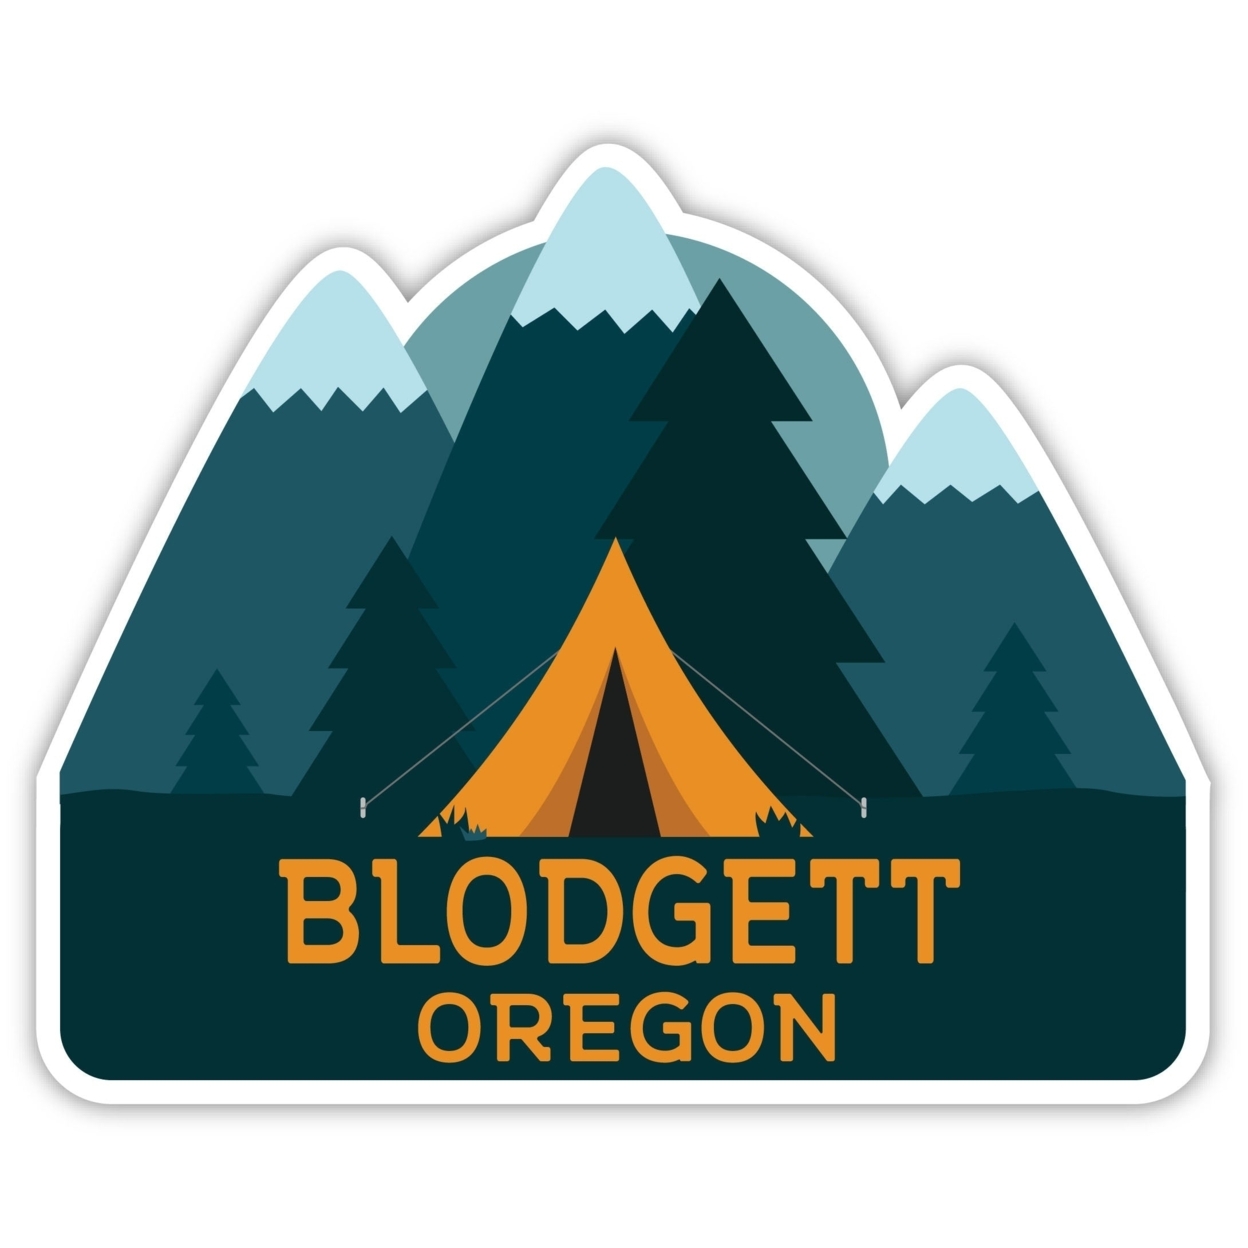 Blodgett Oregon Souvenir Decorative Stickers (Choose Theme And Size) - Single Unit, 8-Inch, Tent